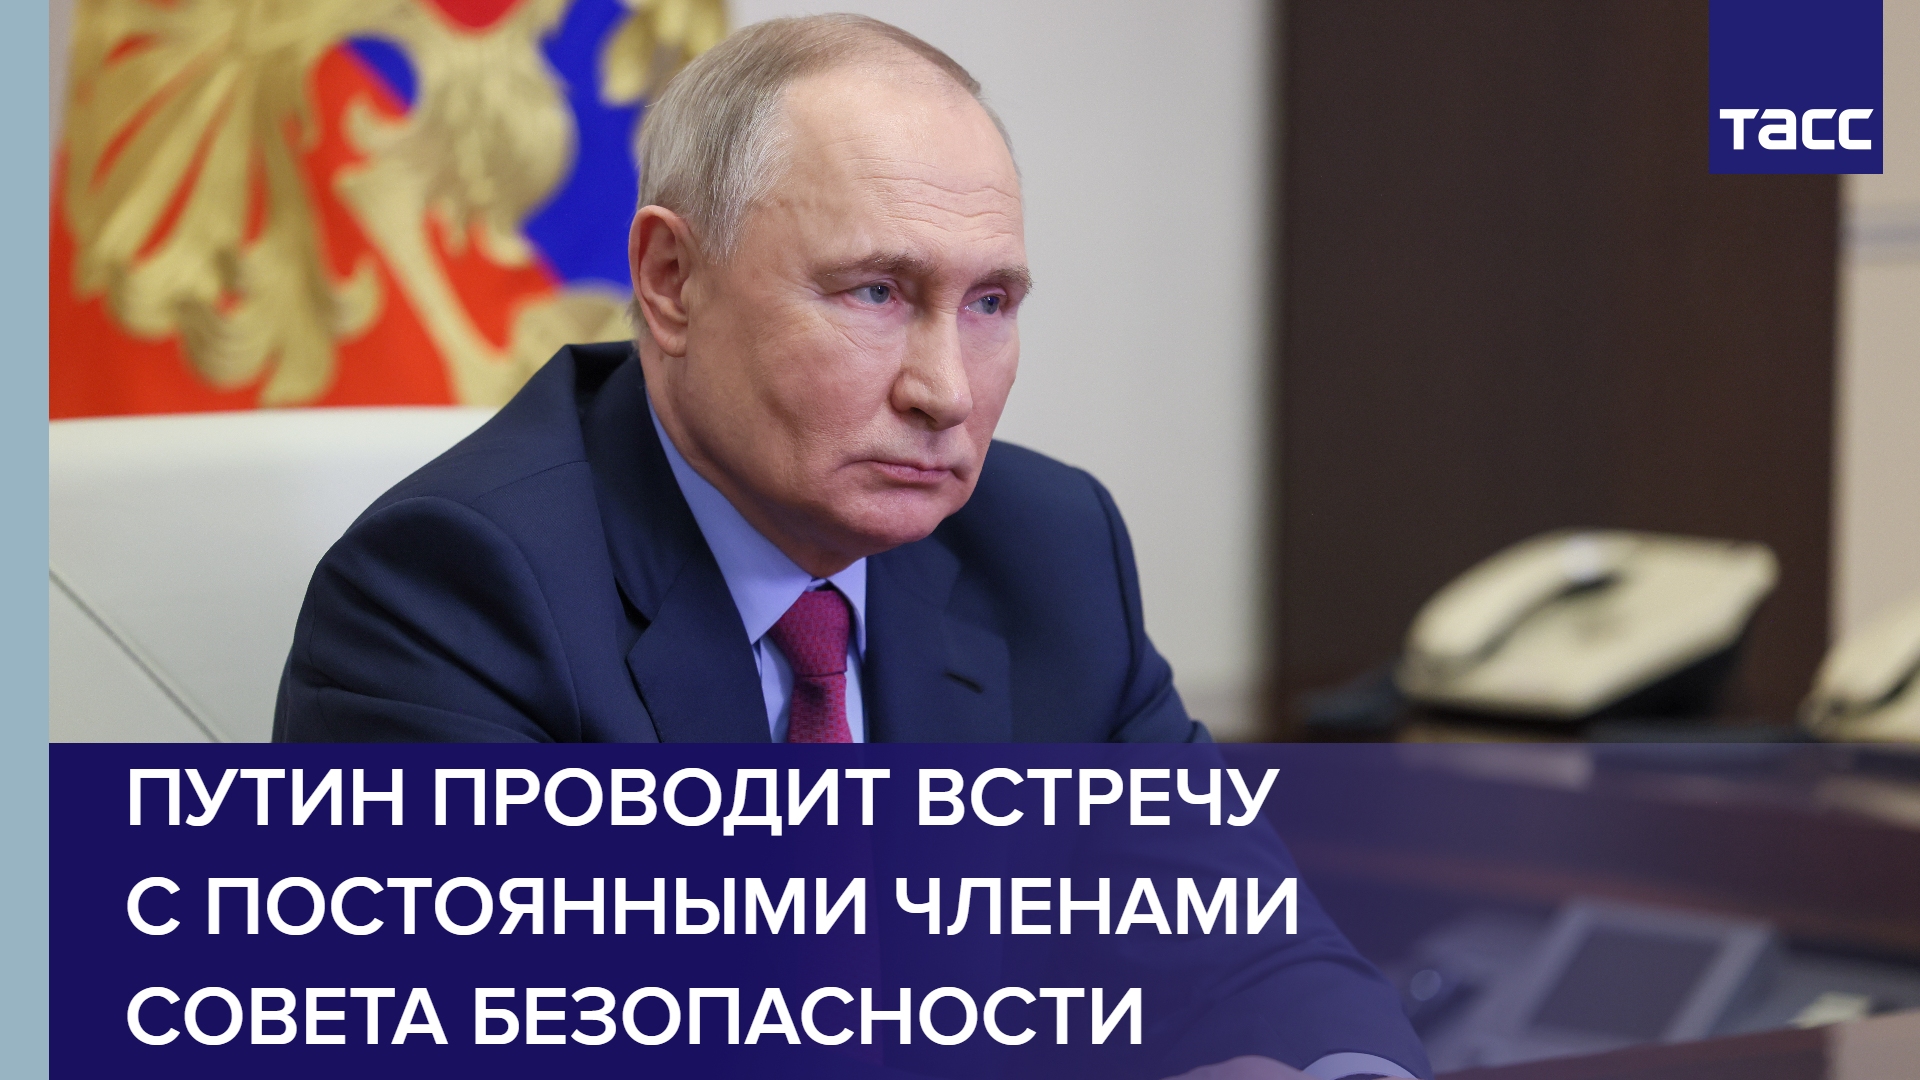 Путин проводит встречу с постоянными членами Совета Безопасности